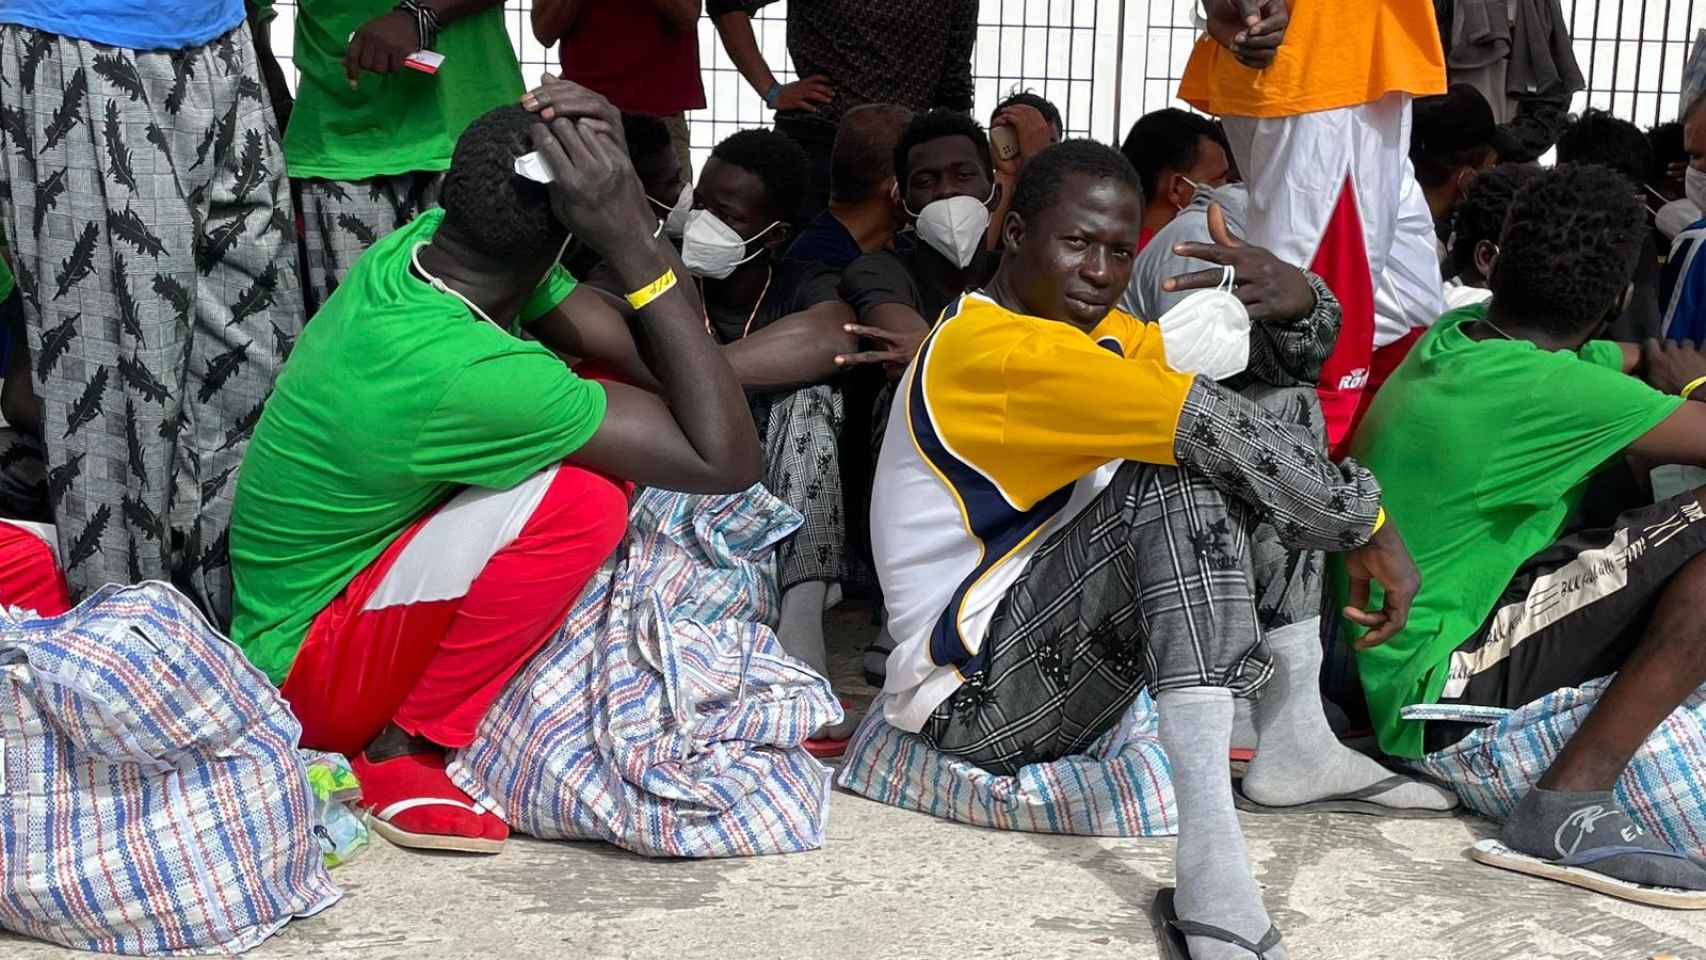 Migrantes en el puerto de Lampedusa este jueves esperan embarcar un ferry a Sicilia.